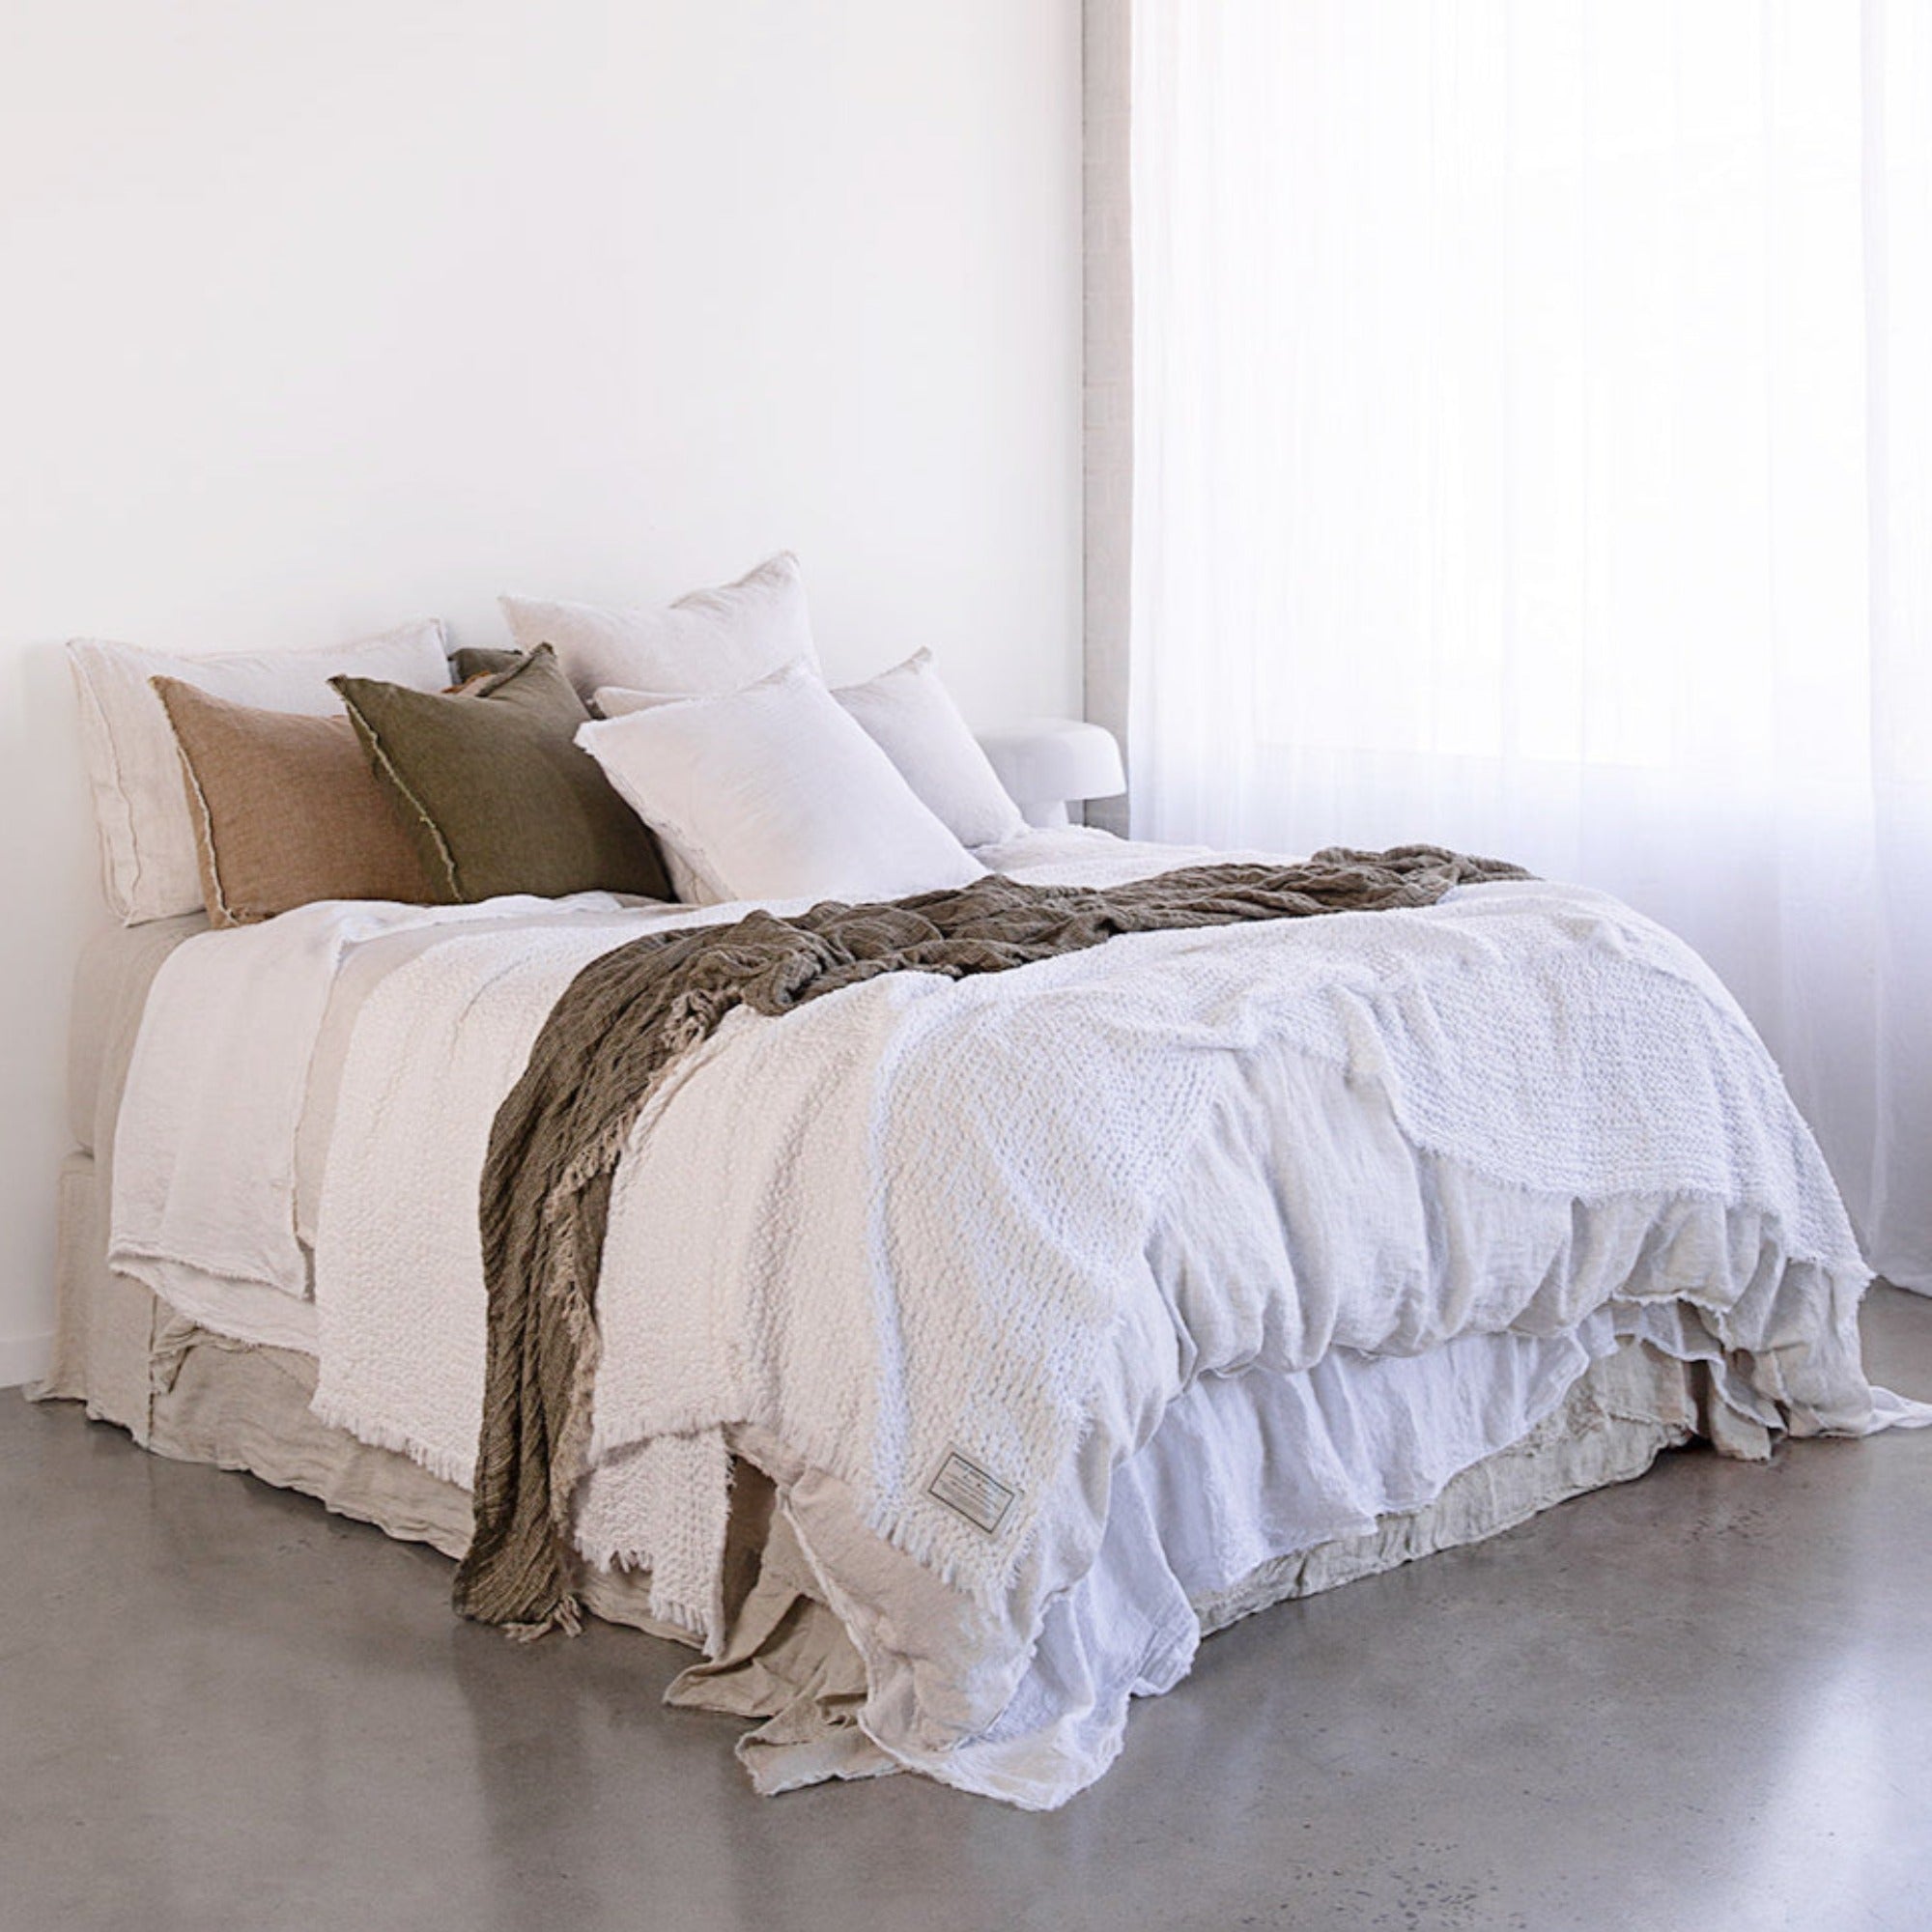 Linen Cushion & Cover | Antique White | Hale Mercantile Co.